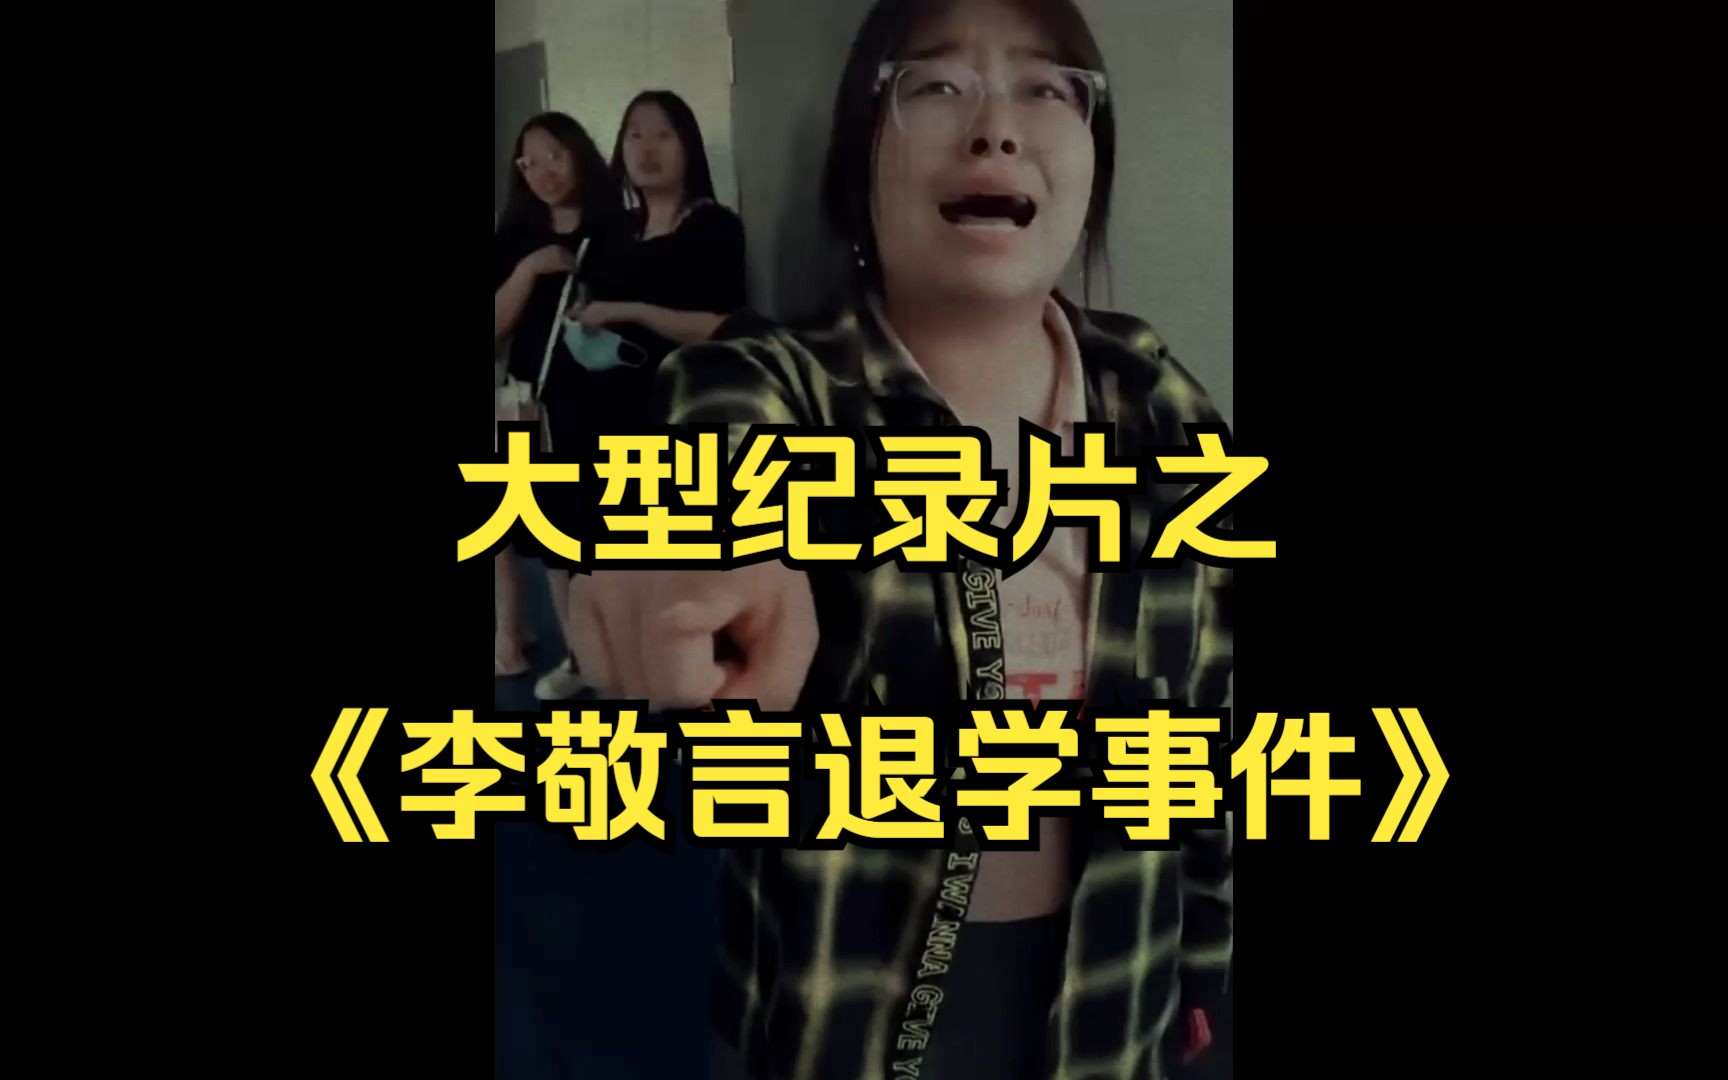 大型纪录片之《李敬言退学事件》北京政法职业学院一口咬定李敬言发布的视频恶意剪辑